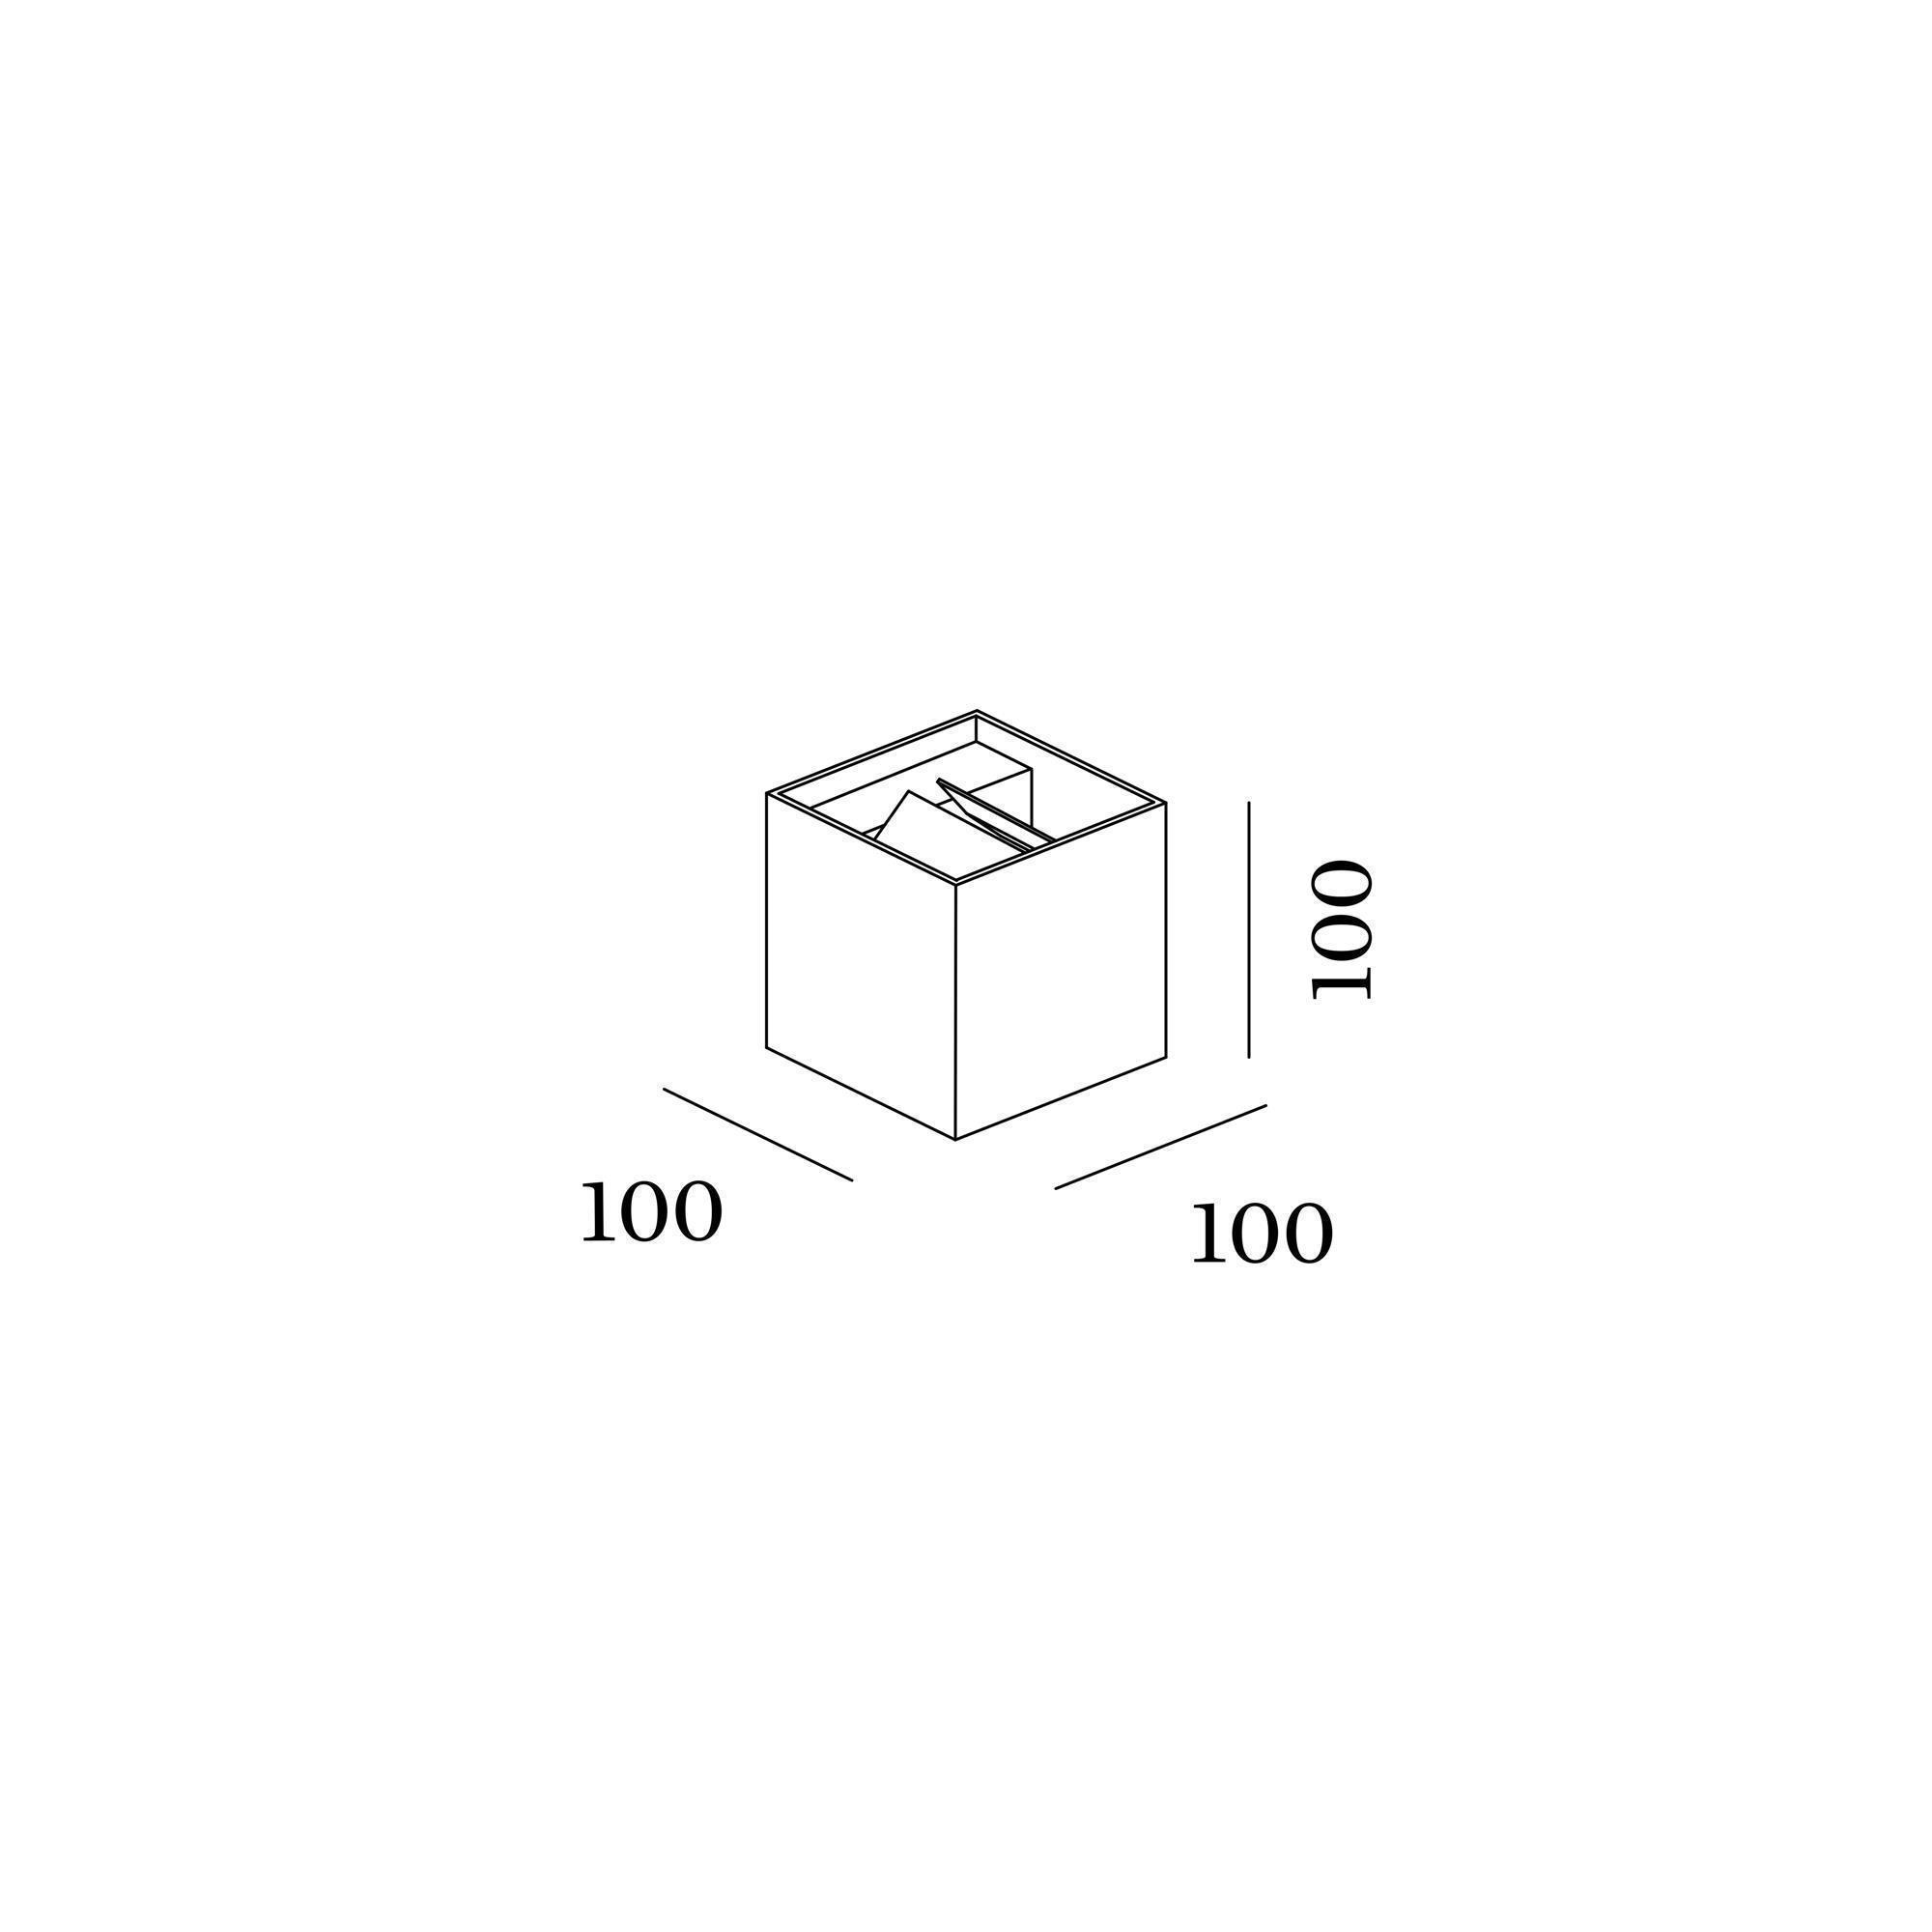 box_wall_surface_2.0_led_